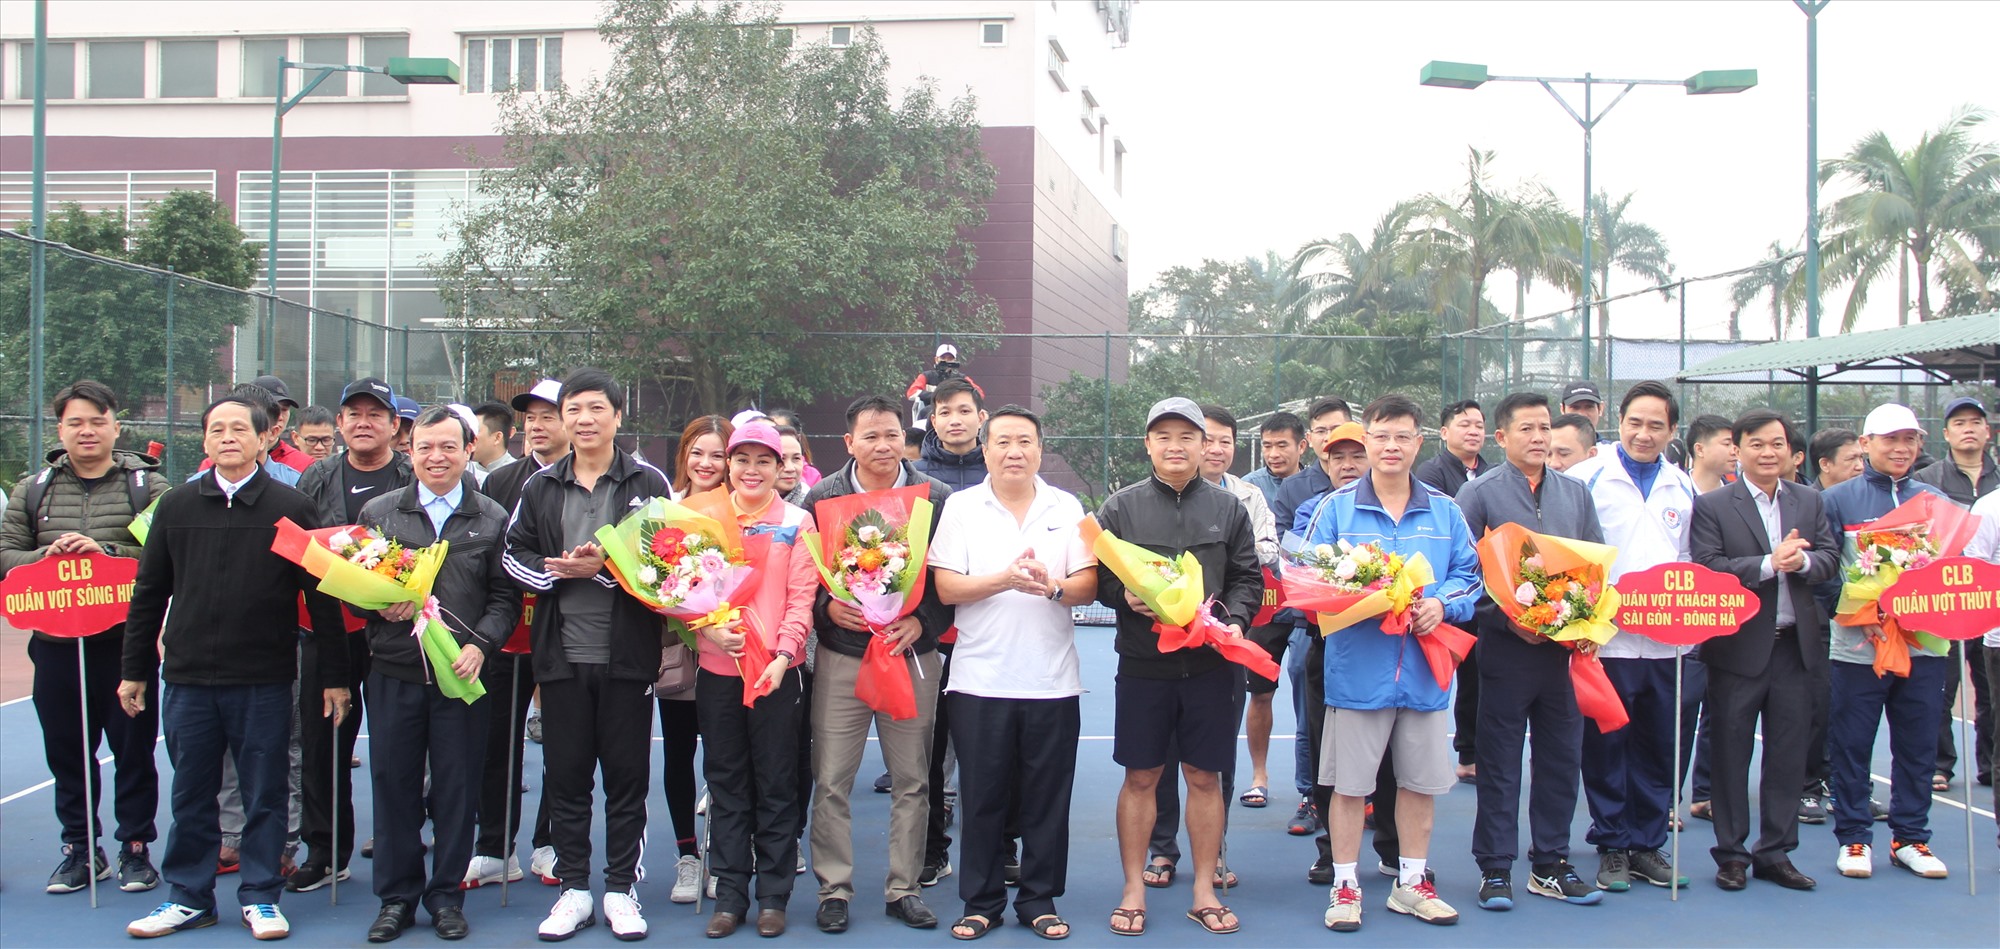 Lãnh đạo tỉnh và Ban tổ chức giải tặng hoa cho các CLB quần vợt và đội ngũ trọng tài - Ảnh: M.Đ